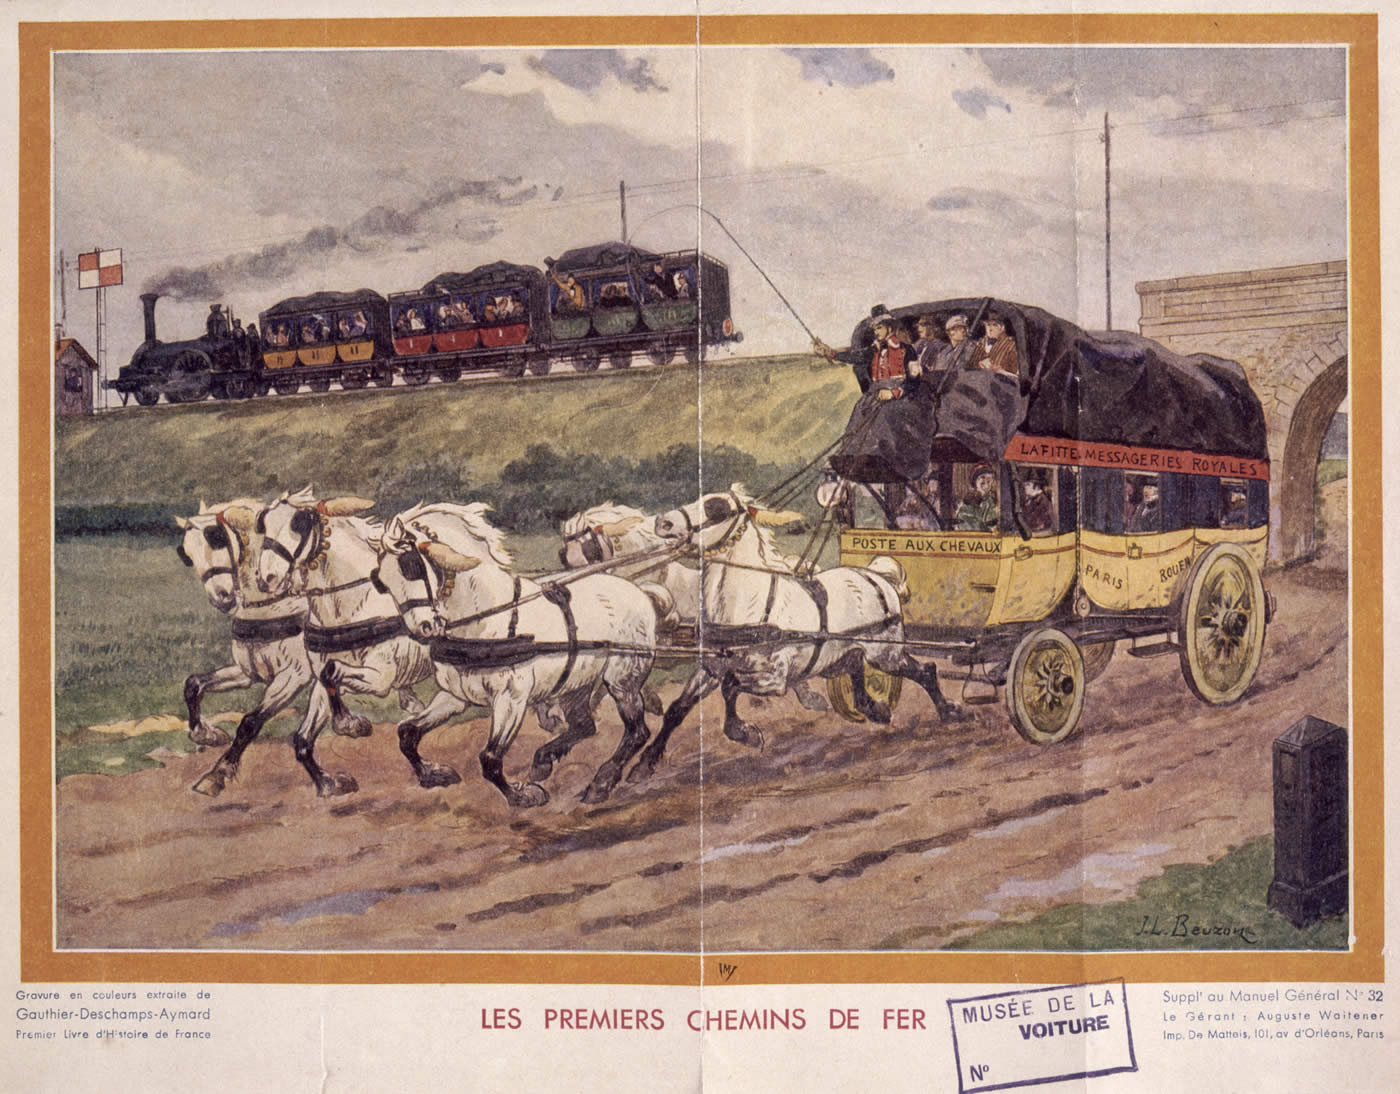 Les premiers chemins de fer.